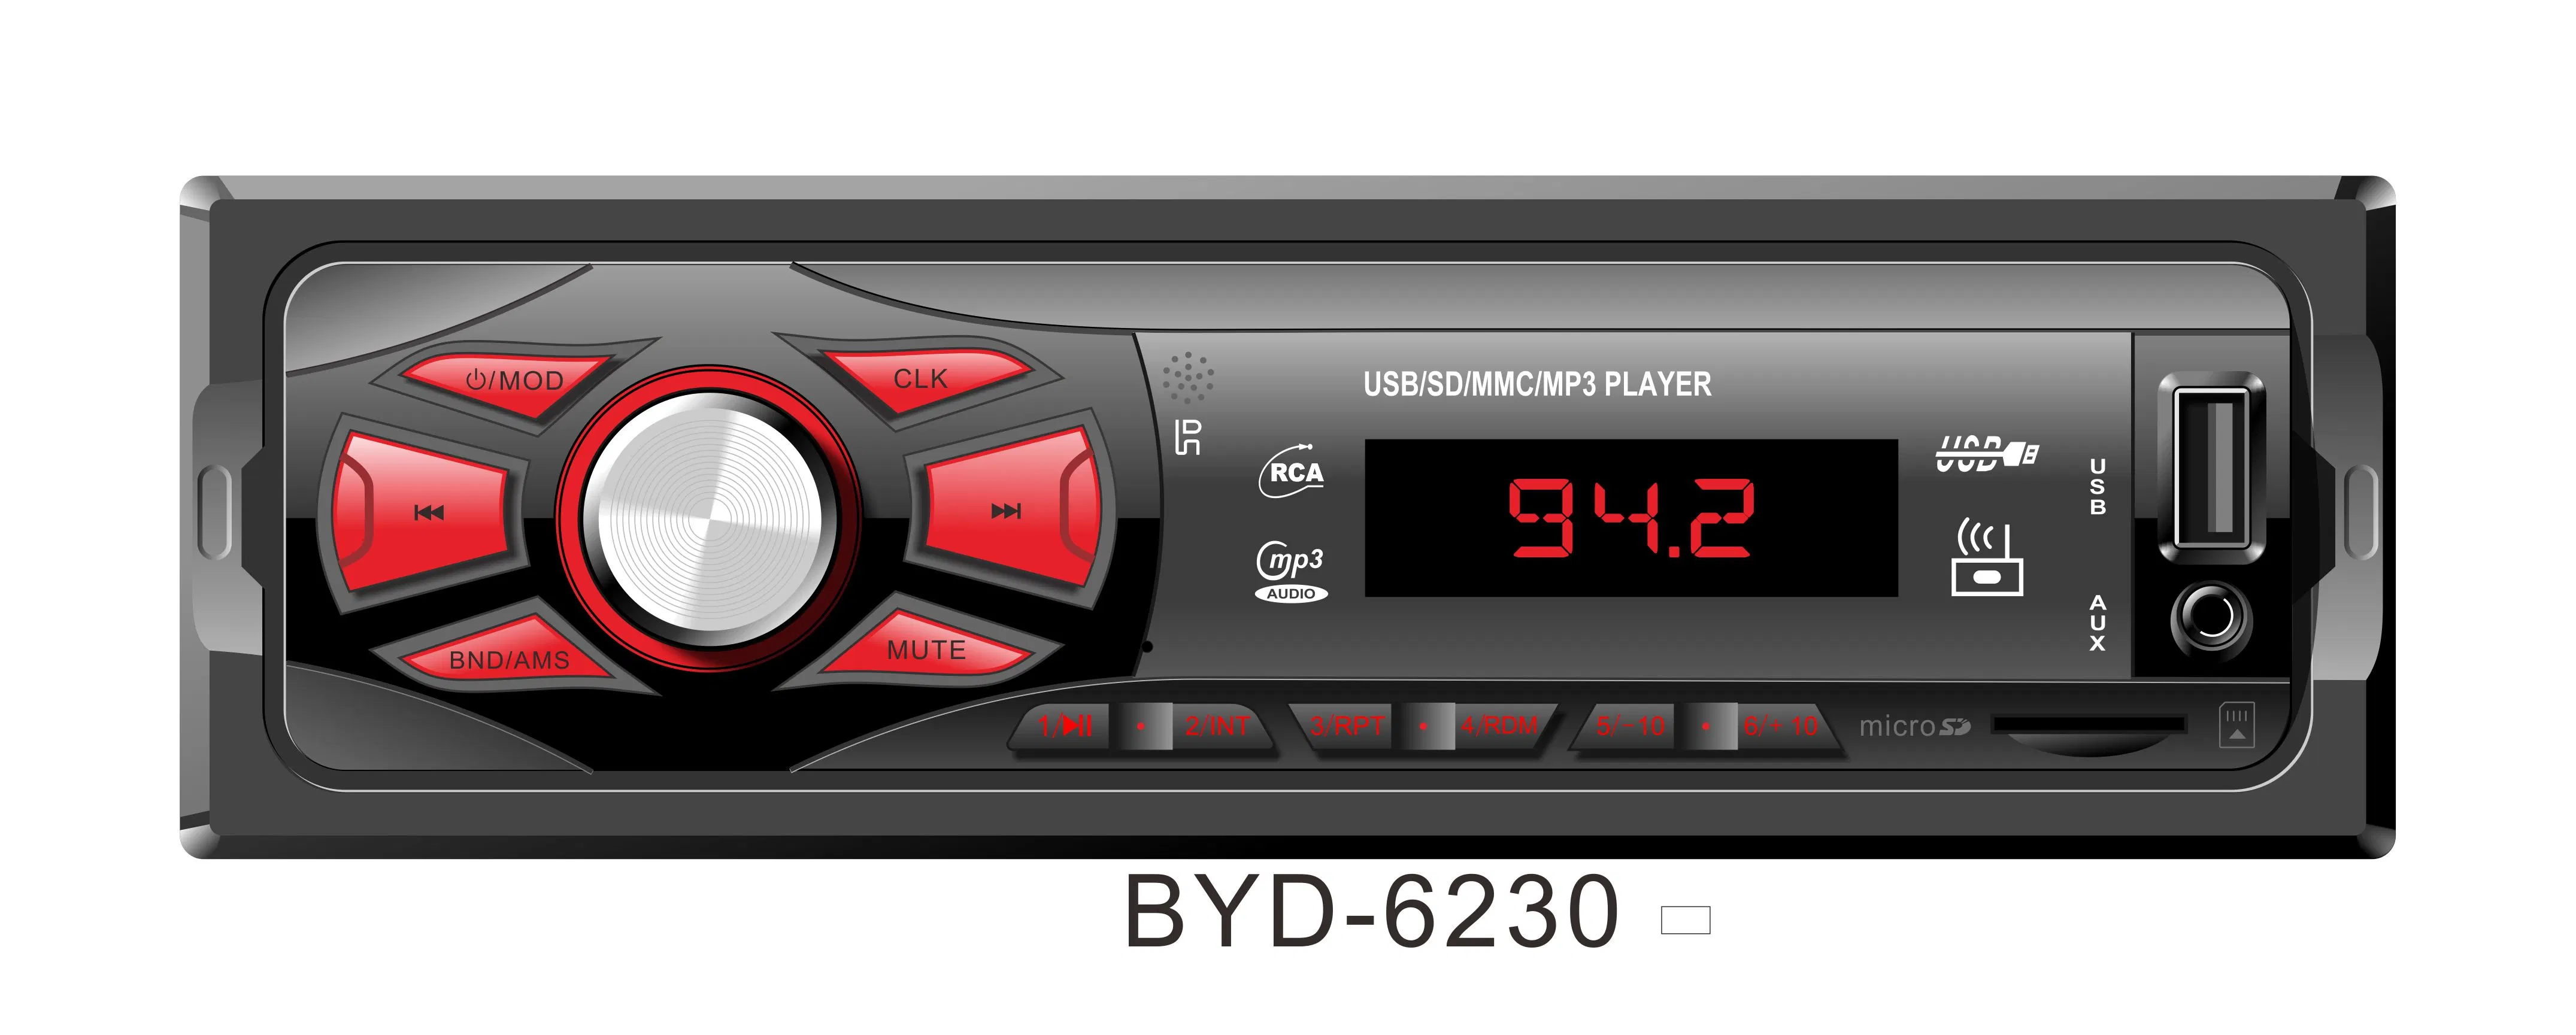 MP3-Car Audio мультимедийным проигрывателем радио электроники